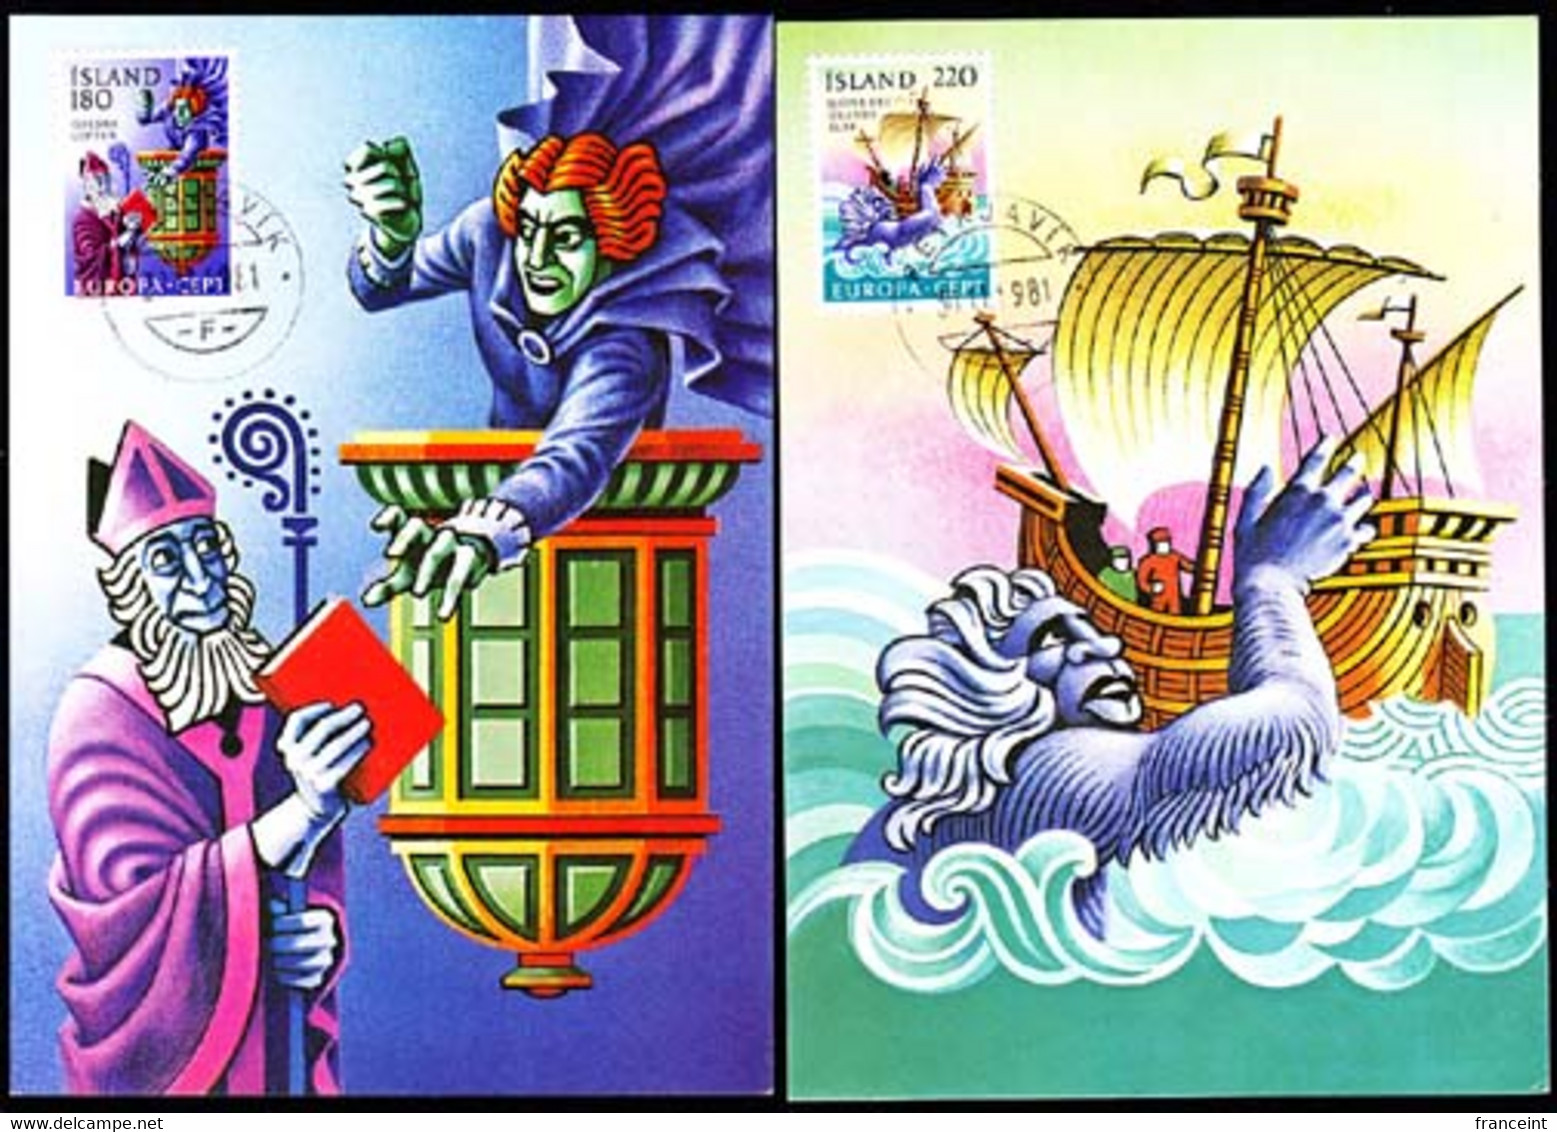 ICELAND (1981) Luftur The Sorcerer. Sea Witch. Set Of 2 Maximum Cards. Scott Nos 541-2, Yvert Nos 518-9 - Maximumkaarten